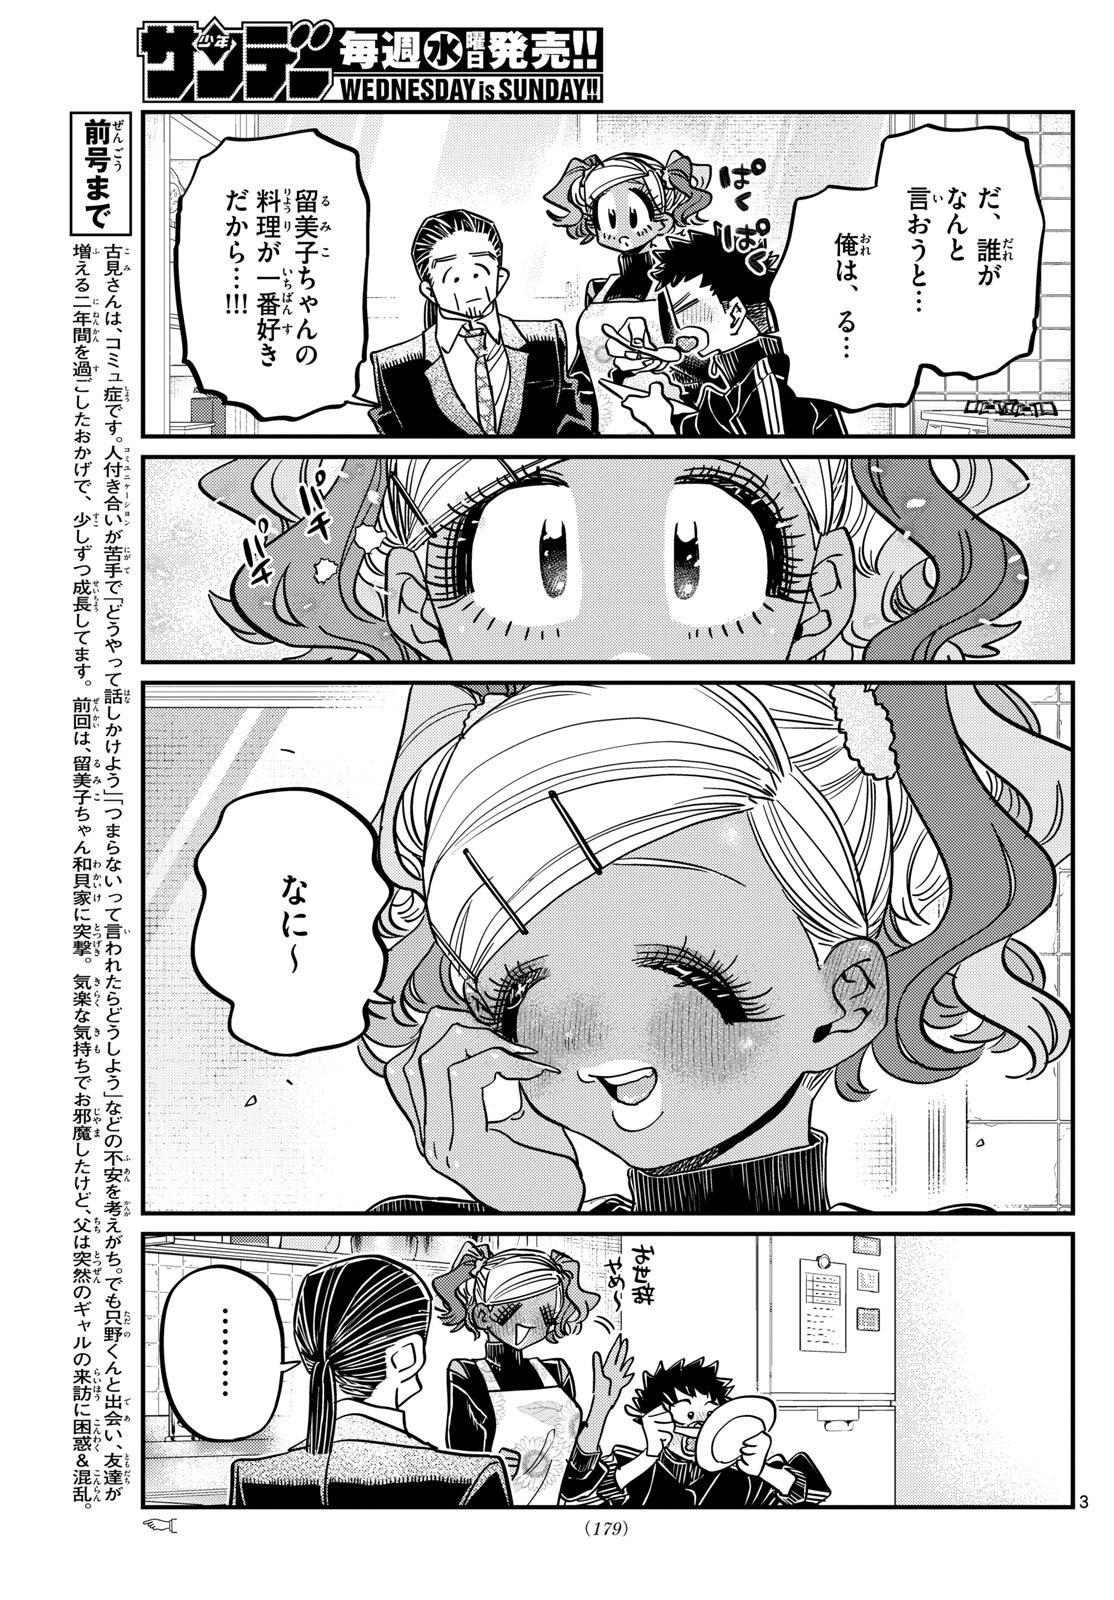 Komi-san wa Komyushou Desu - Chapter 470 - Page 3